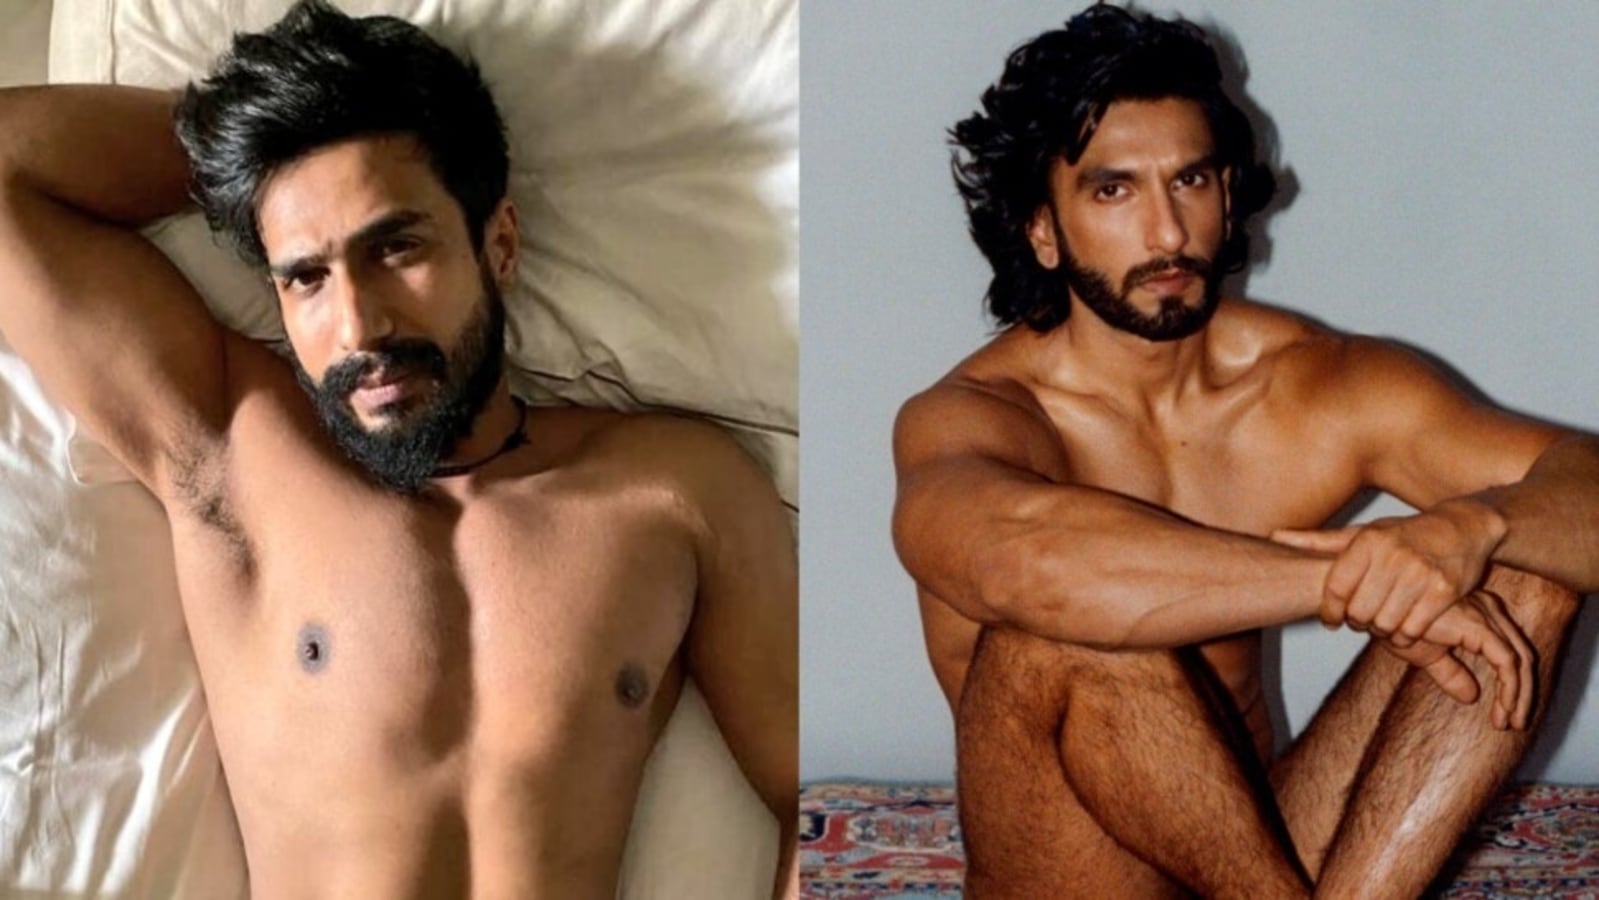 After Ranveer Singh, Vishnu Vishal poses nude as wife Jwala Gutta clicks image